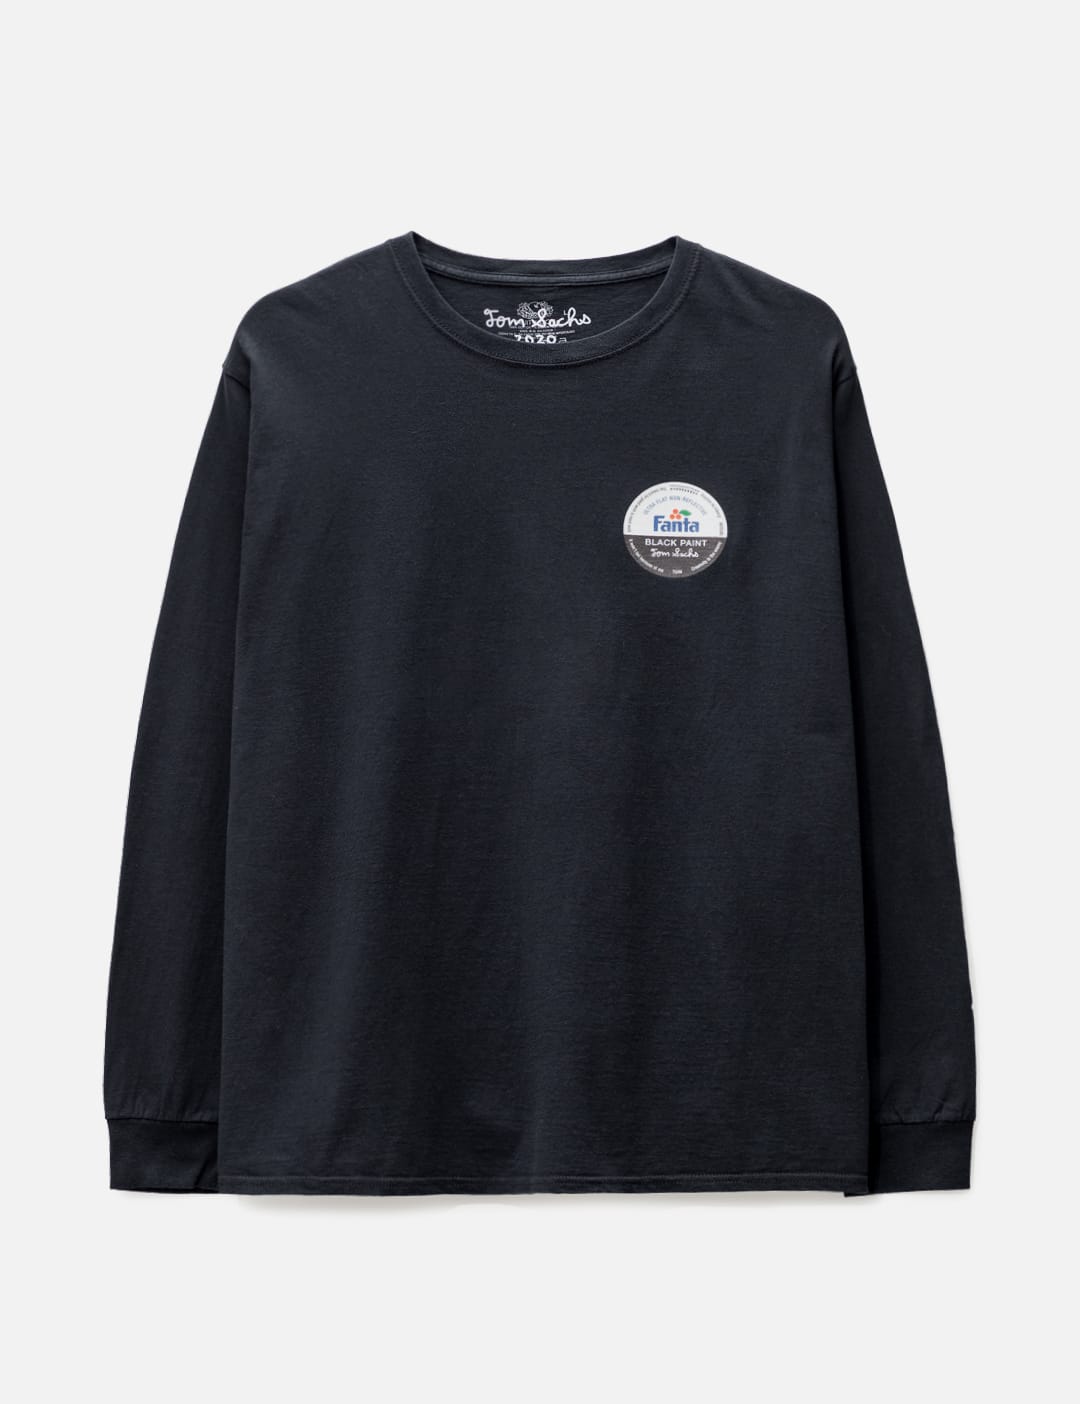 Tom Sachs Fanta Long Sleeve T-shirt In Black | ModeSens